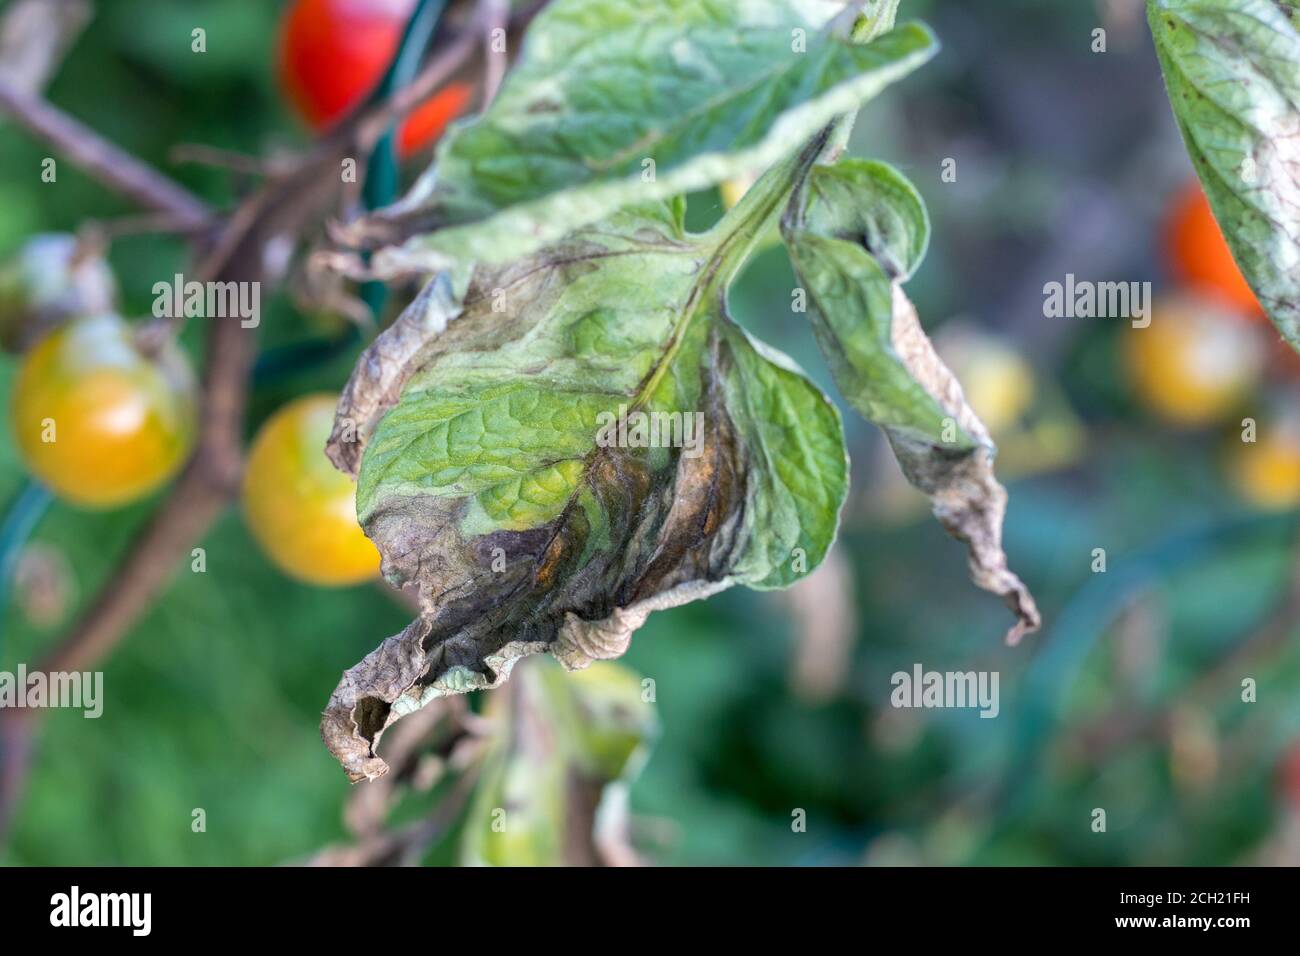 Caterpillar - Old World swallowtail - on fennel Stock Photo